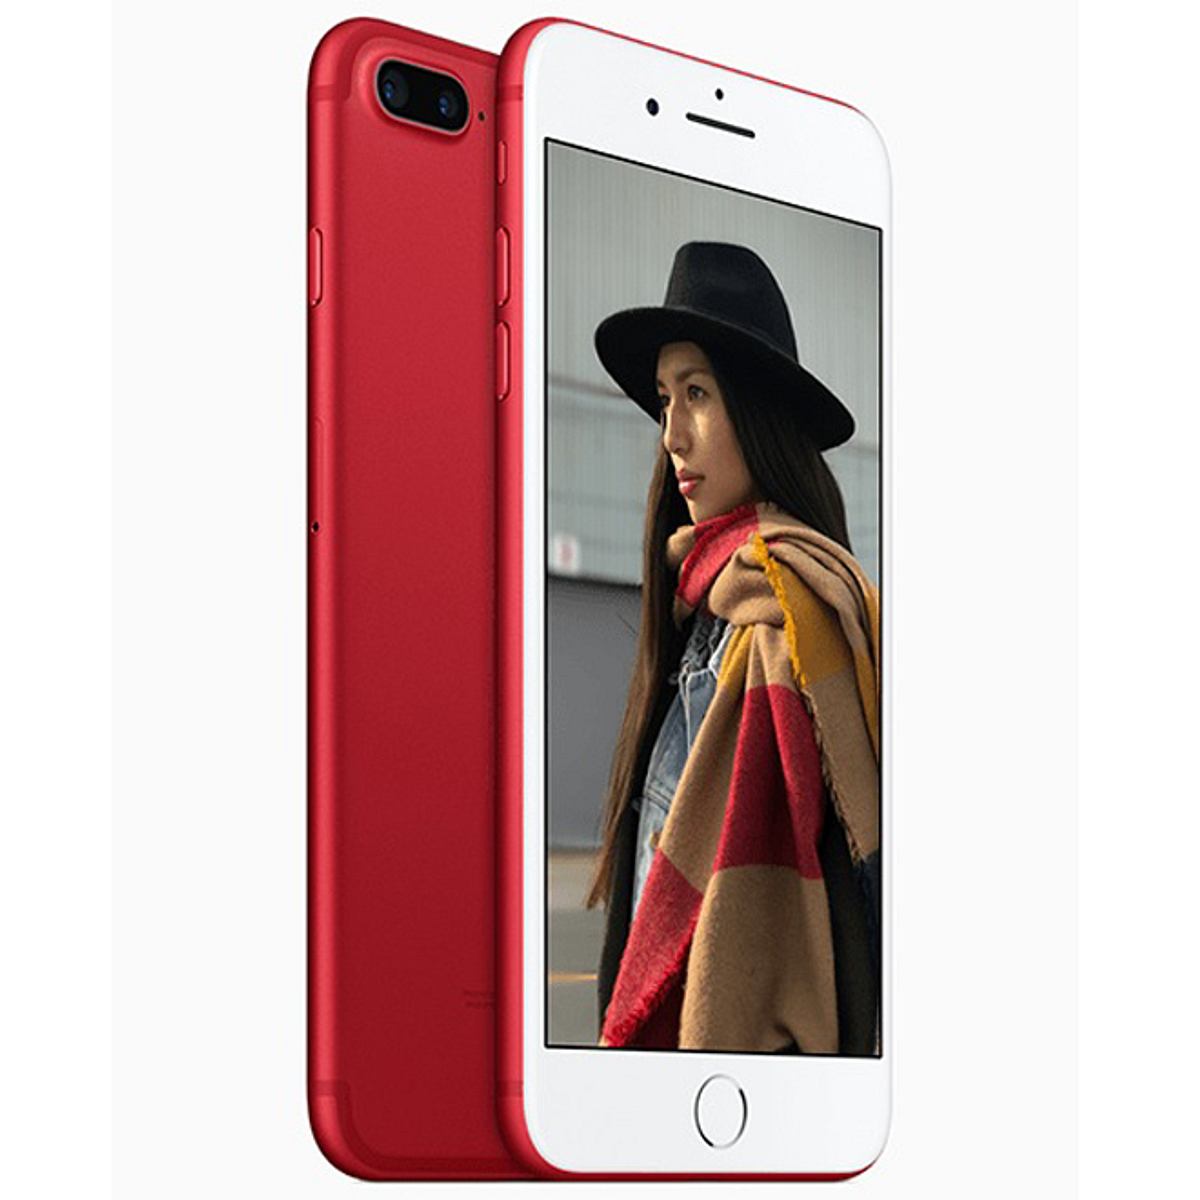 Apple bringt ein rotes iPhone auf den Markt!